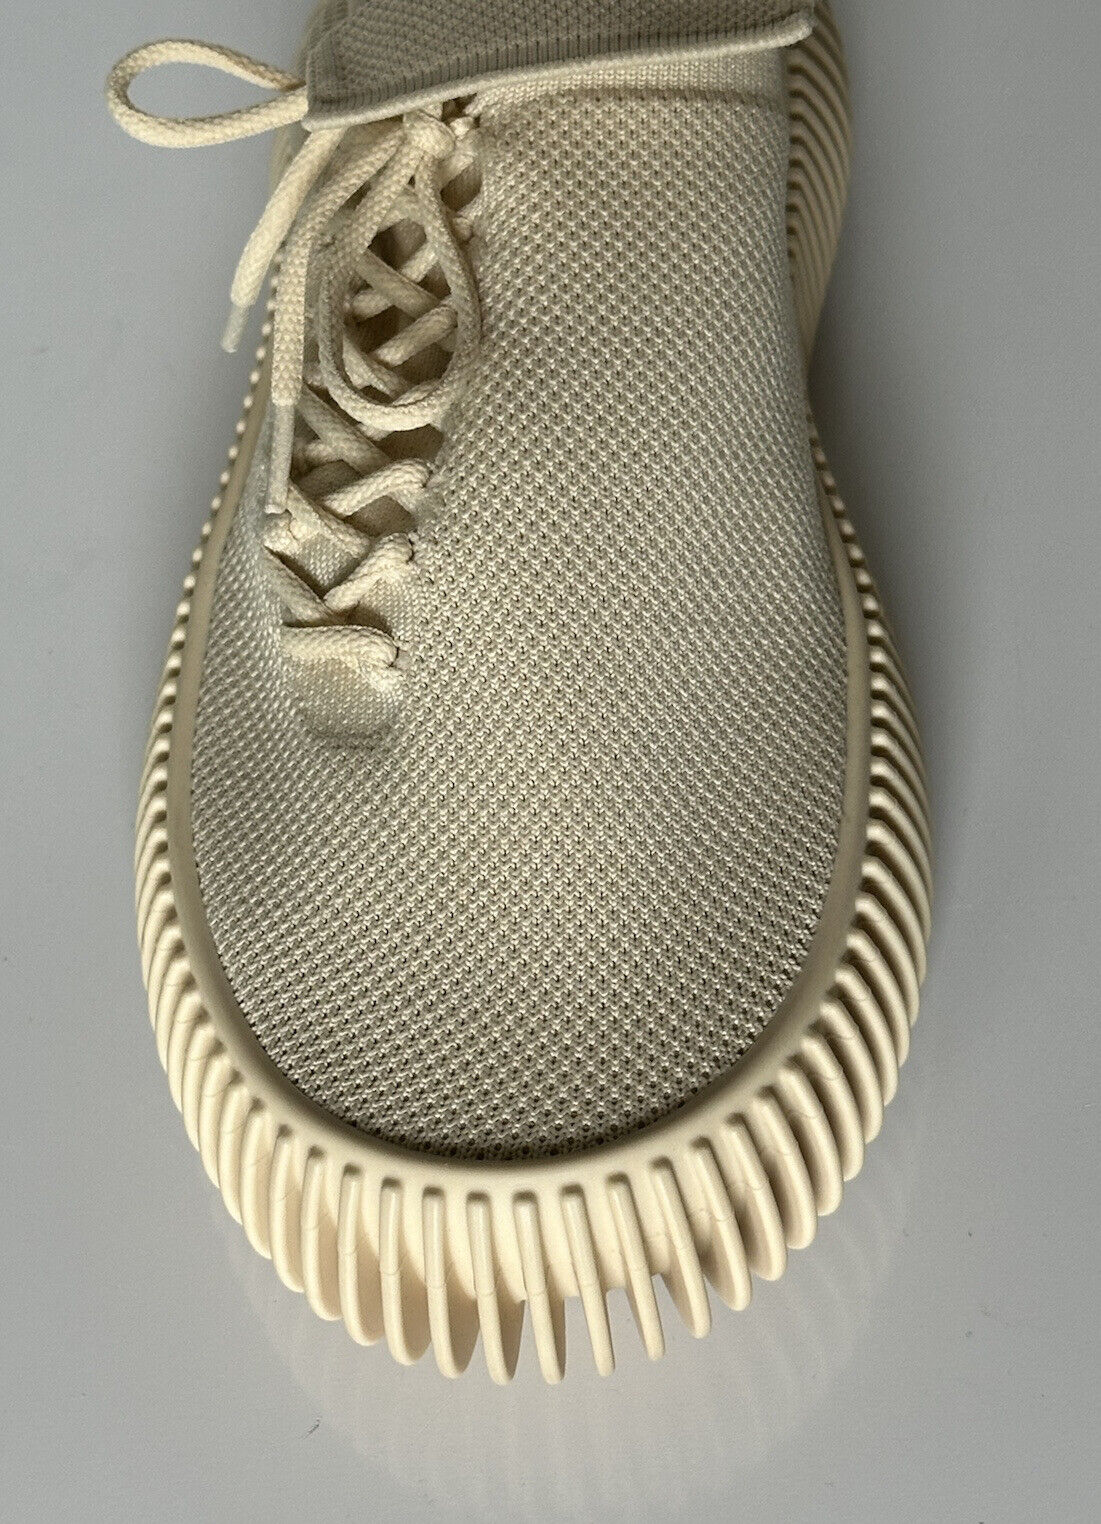 NIB 920 $ Bottega Veneta Tech Knit Cane Sugar Sneakers für Herren 7 US (40 Eu) 690112 